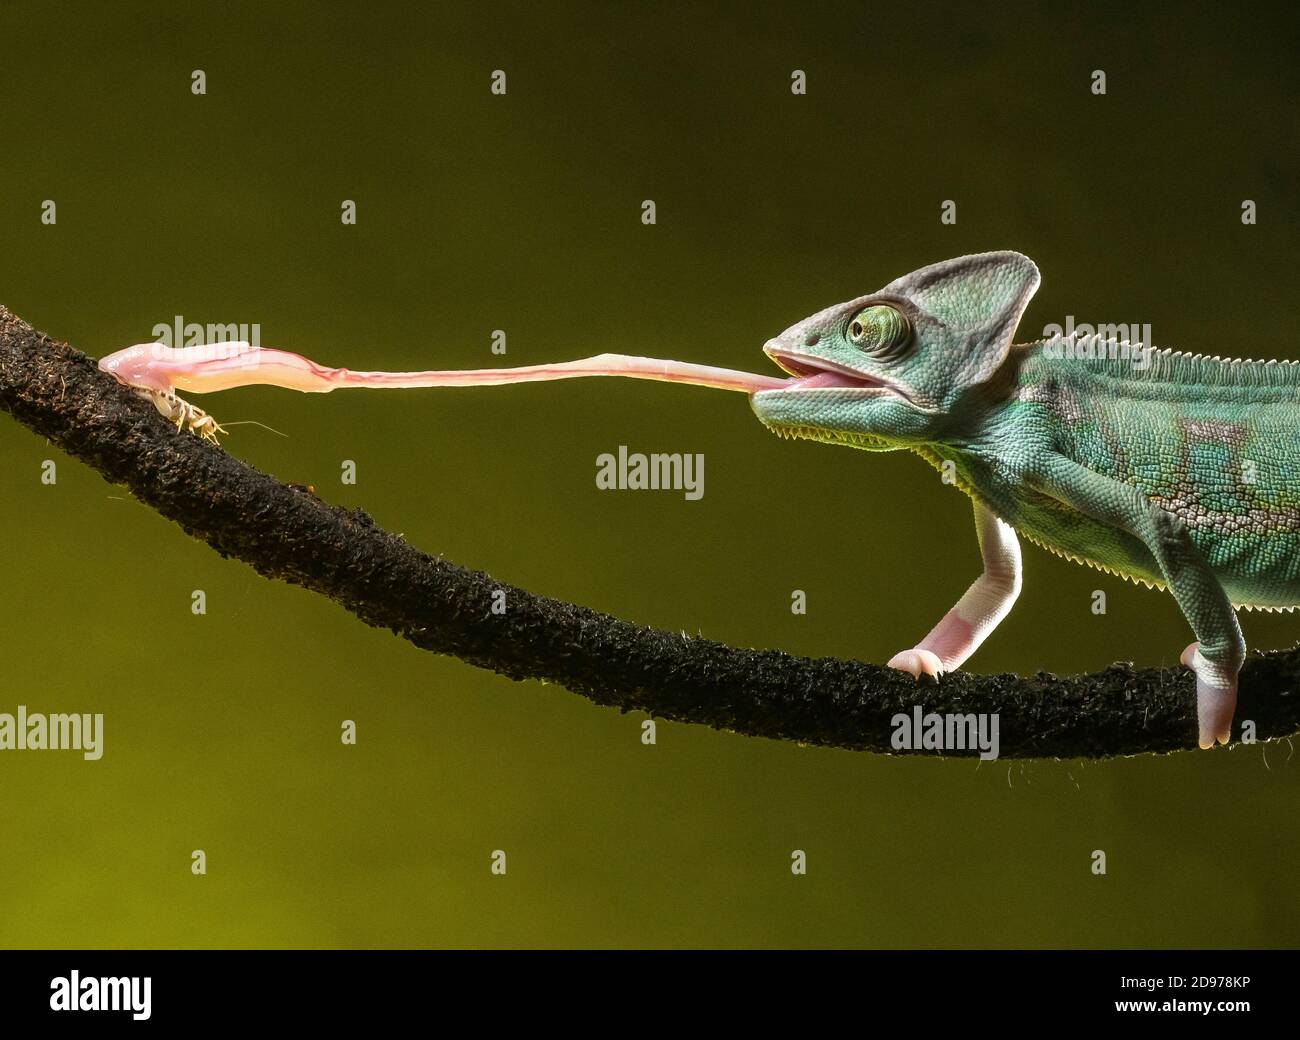 Yemen chameleon (Chamaeleo calyptratus) che si nutrono di cricket, scatto in studio. Messico. Foto Stock